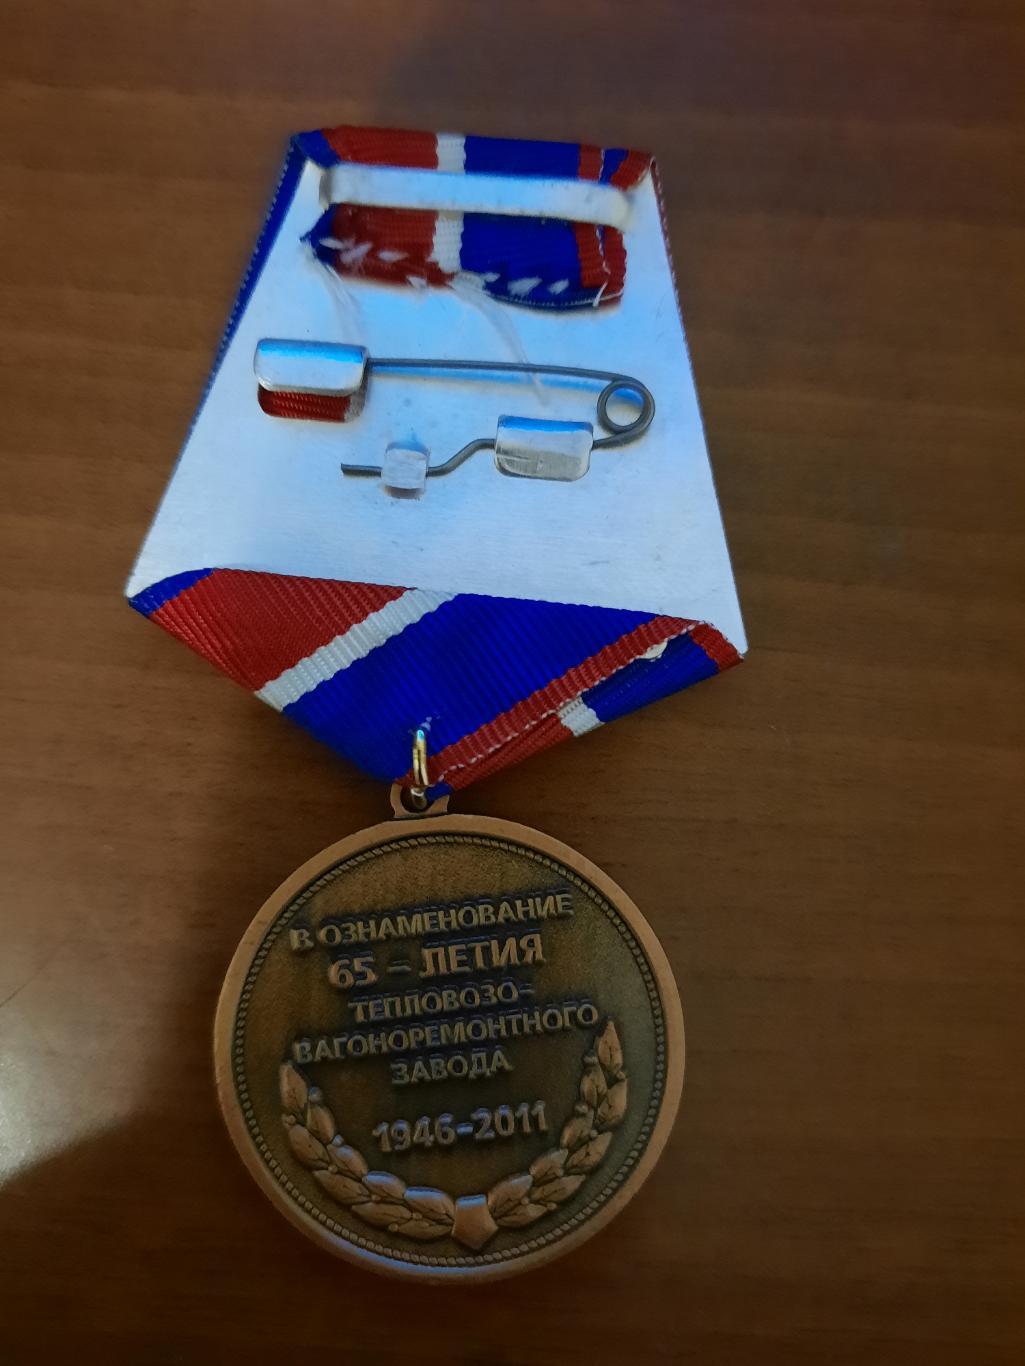 Медаль В ознаменование 65-летия тепловозо-вагоноремонтного завода Южно-Сахалинск 1